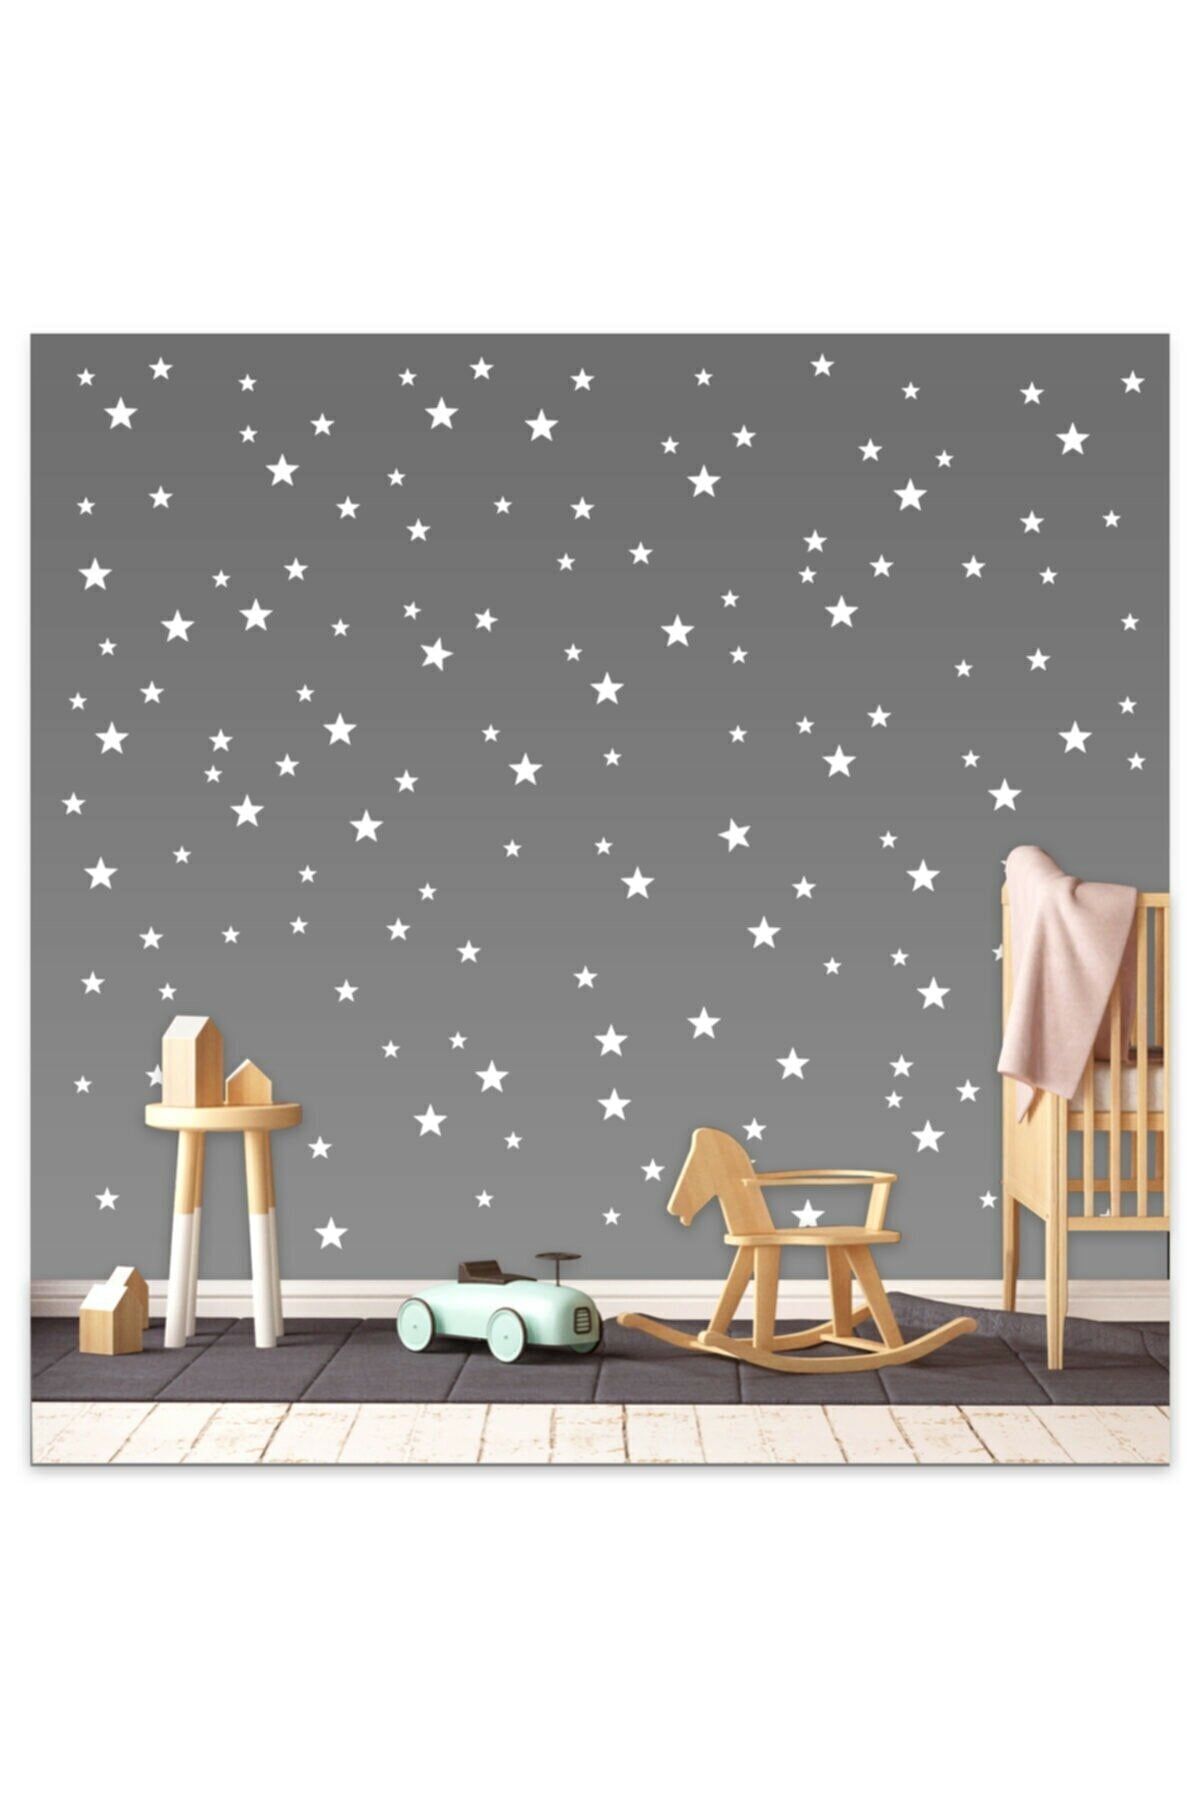 Genel Markalar Bebek Ve Çocuk Odası Yıldız Seti 3,4,5 cm 50 Adet Beyaz Renk